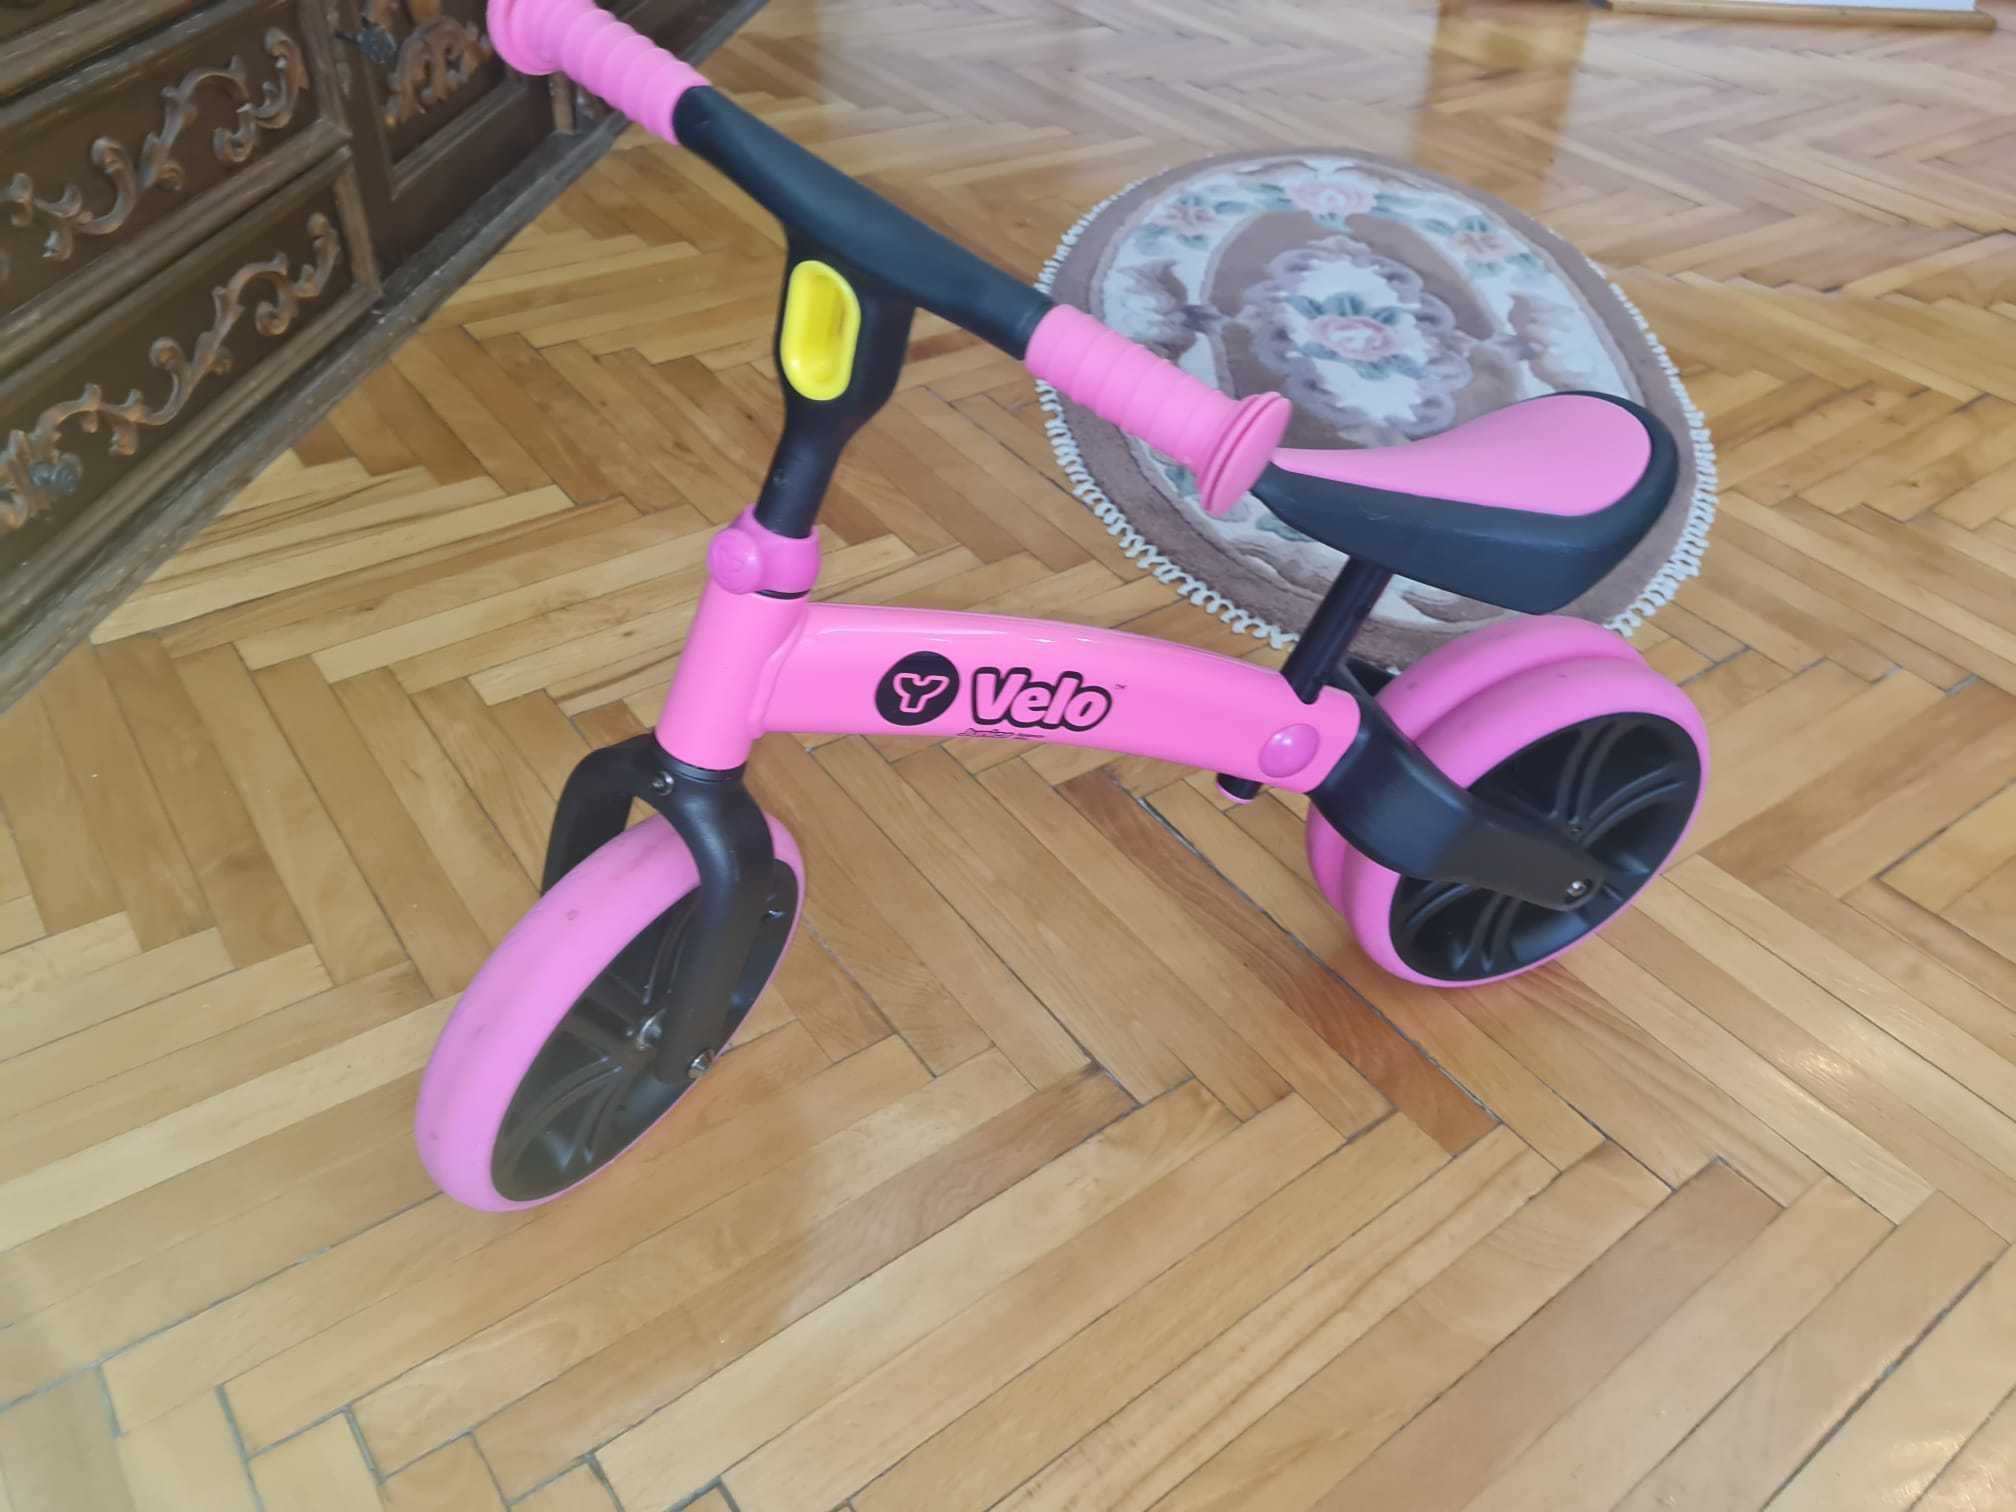 Bicicleta de echilibru Yvolution YVelo Junior roz, in cutie (270 RON)